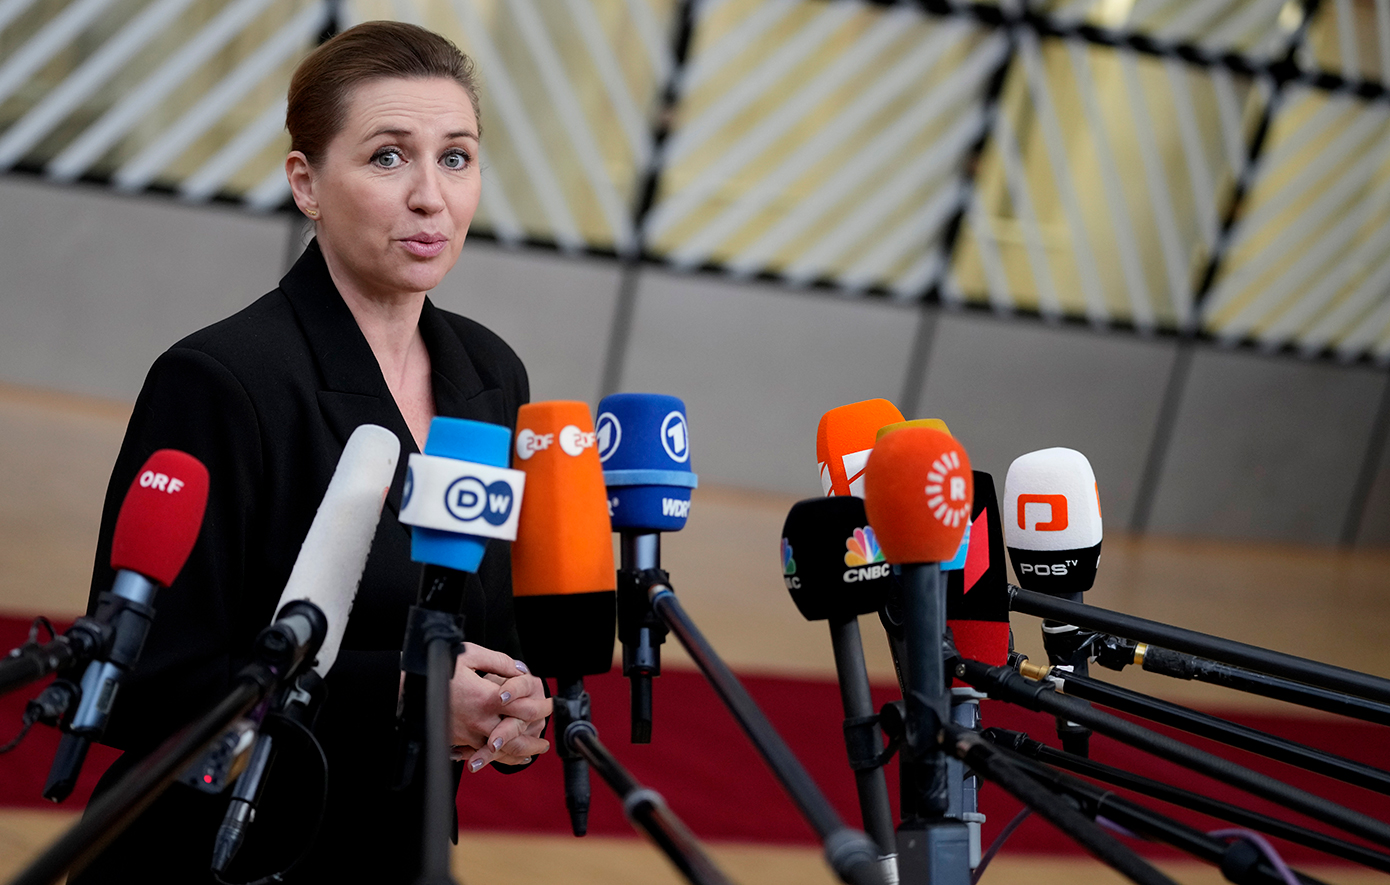 Δανία: Η κοινωνία δυσκολεύεται να αποδεχθεί γυναίκες στην εξουσία, δηλώνει η πρωθυπουργός Μέτε Φρεντέρικσεν